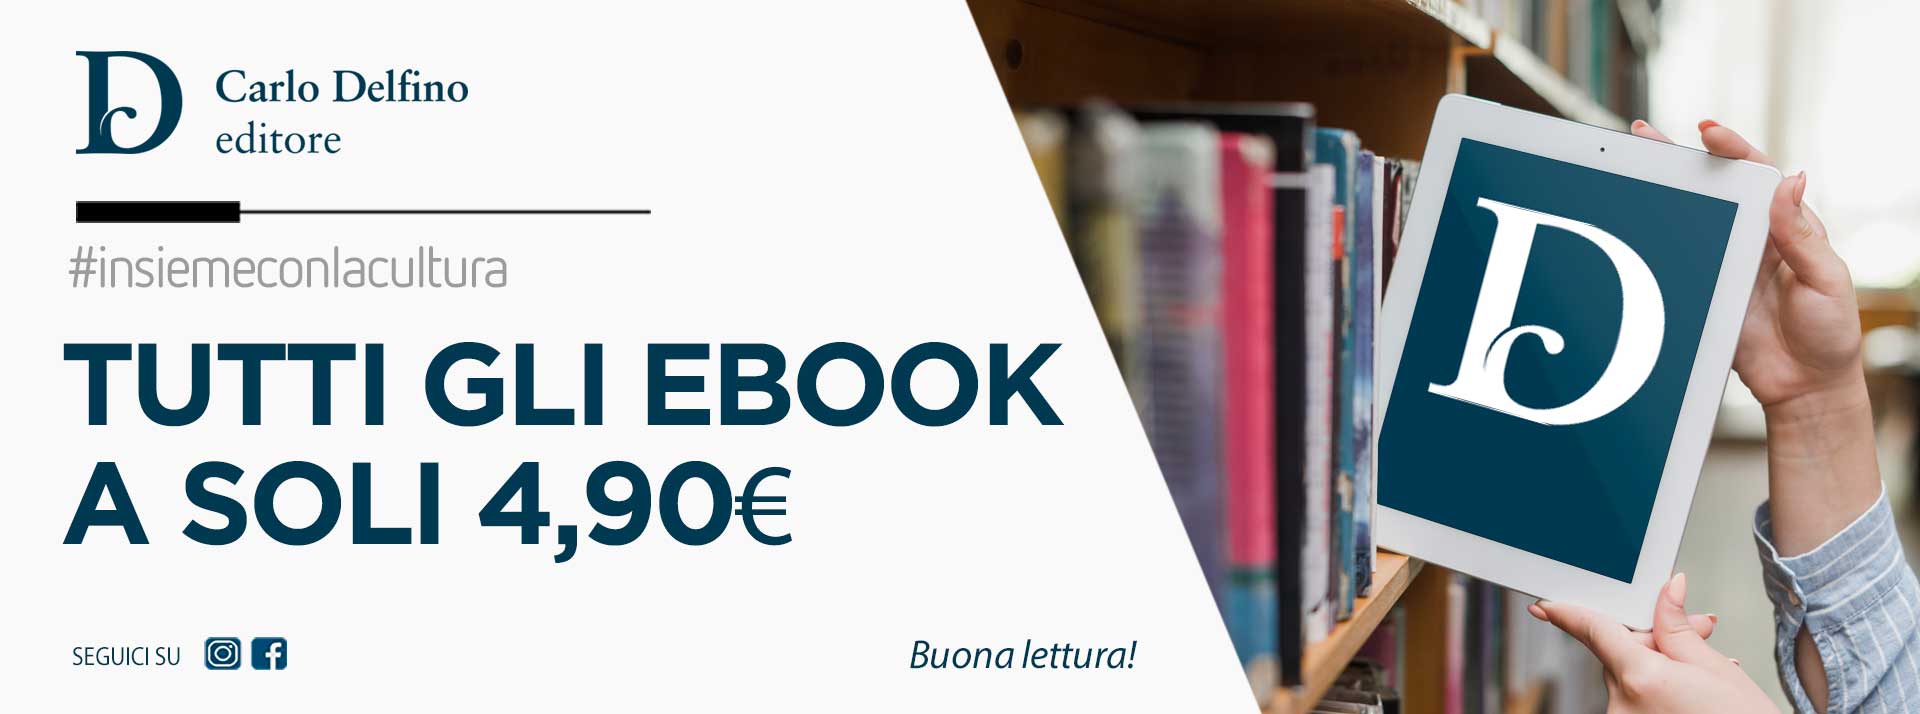 Tutti gli e-book a € 4,90